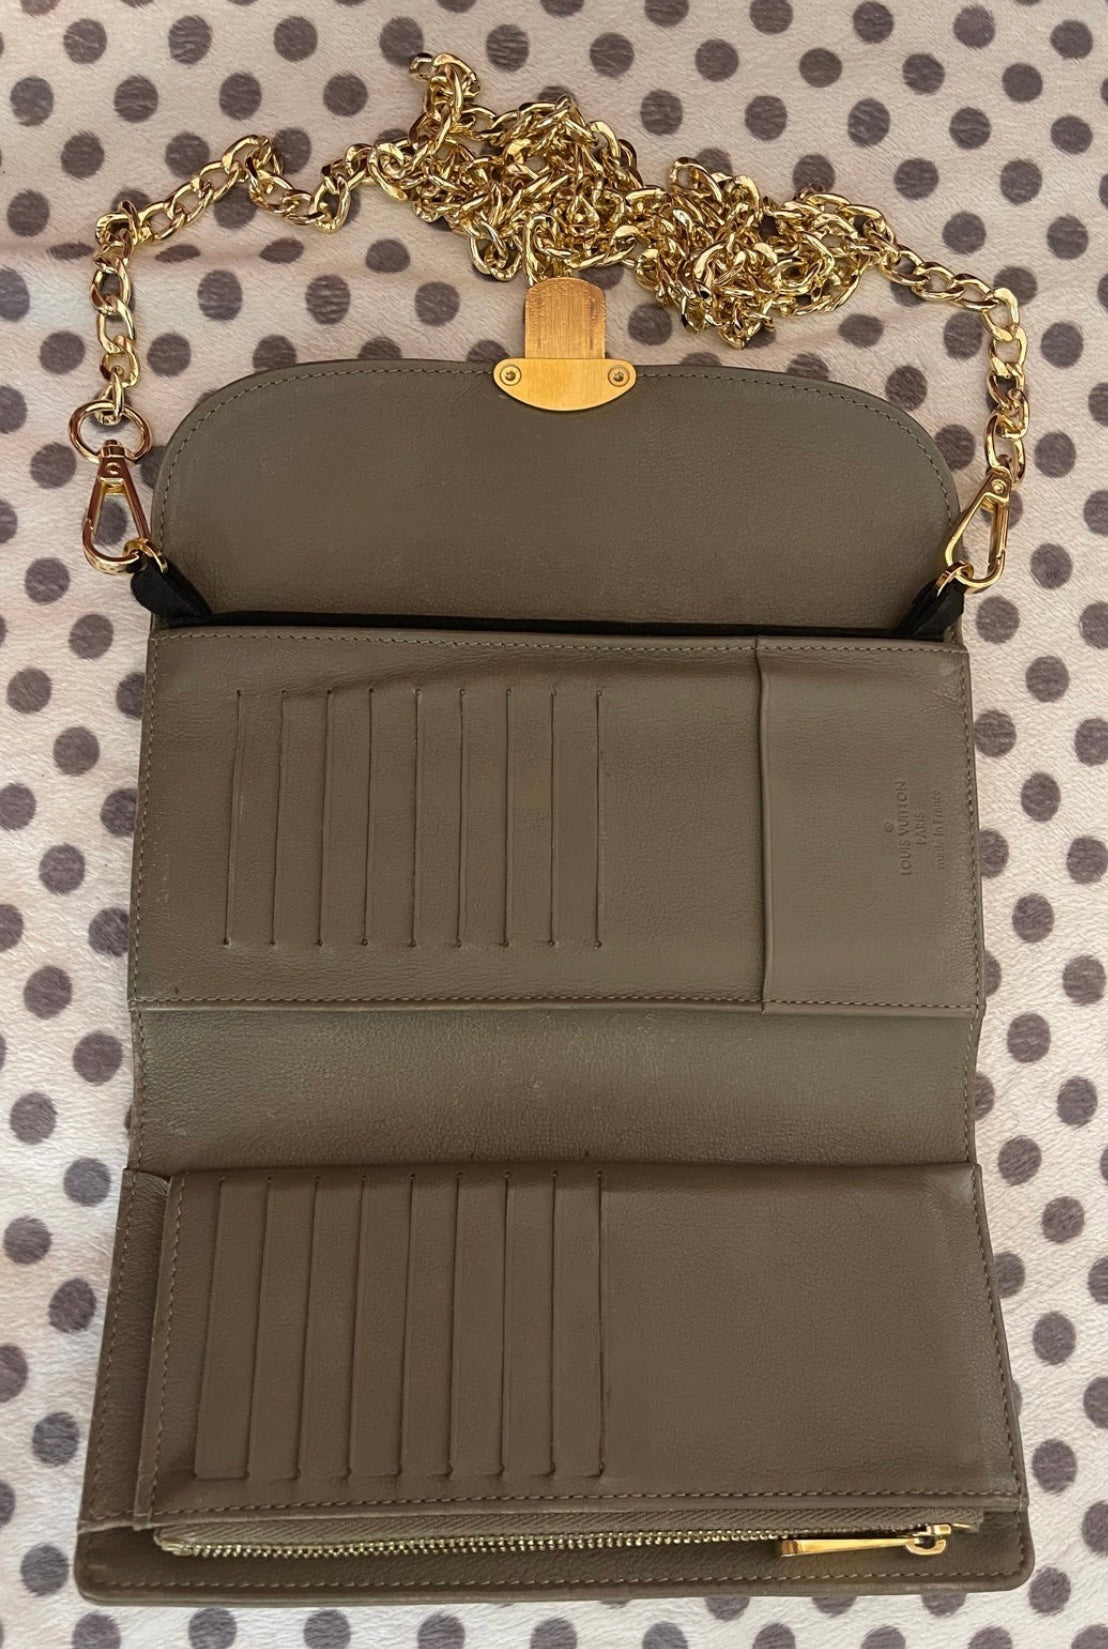 Louis Vuitton Long Wallet Gray Mahina Empreinte Leather TN2122